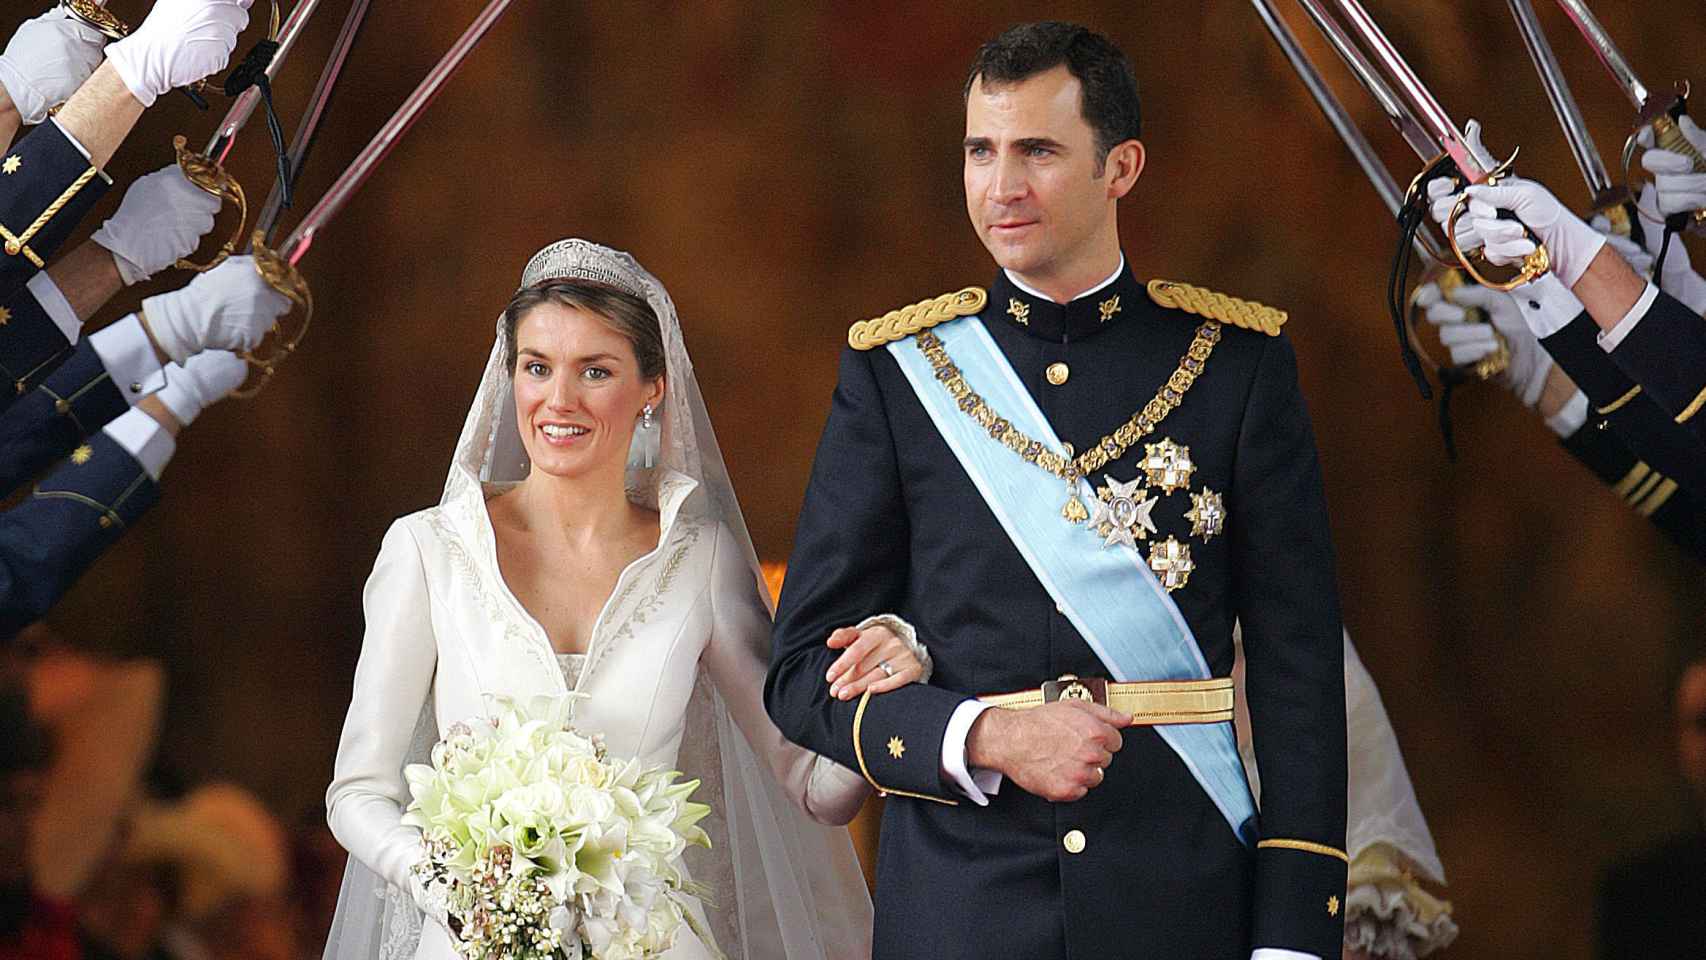 17 años de la boda de Felipe y Letizia 582703720_185763680_1706x960